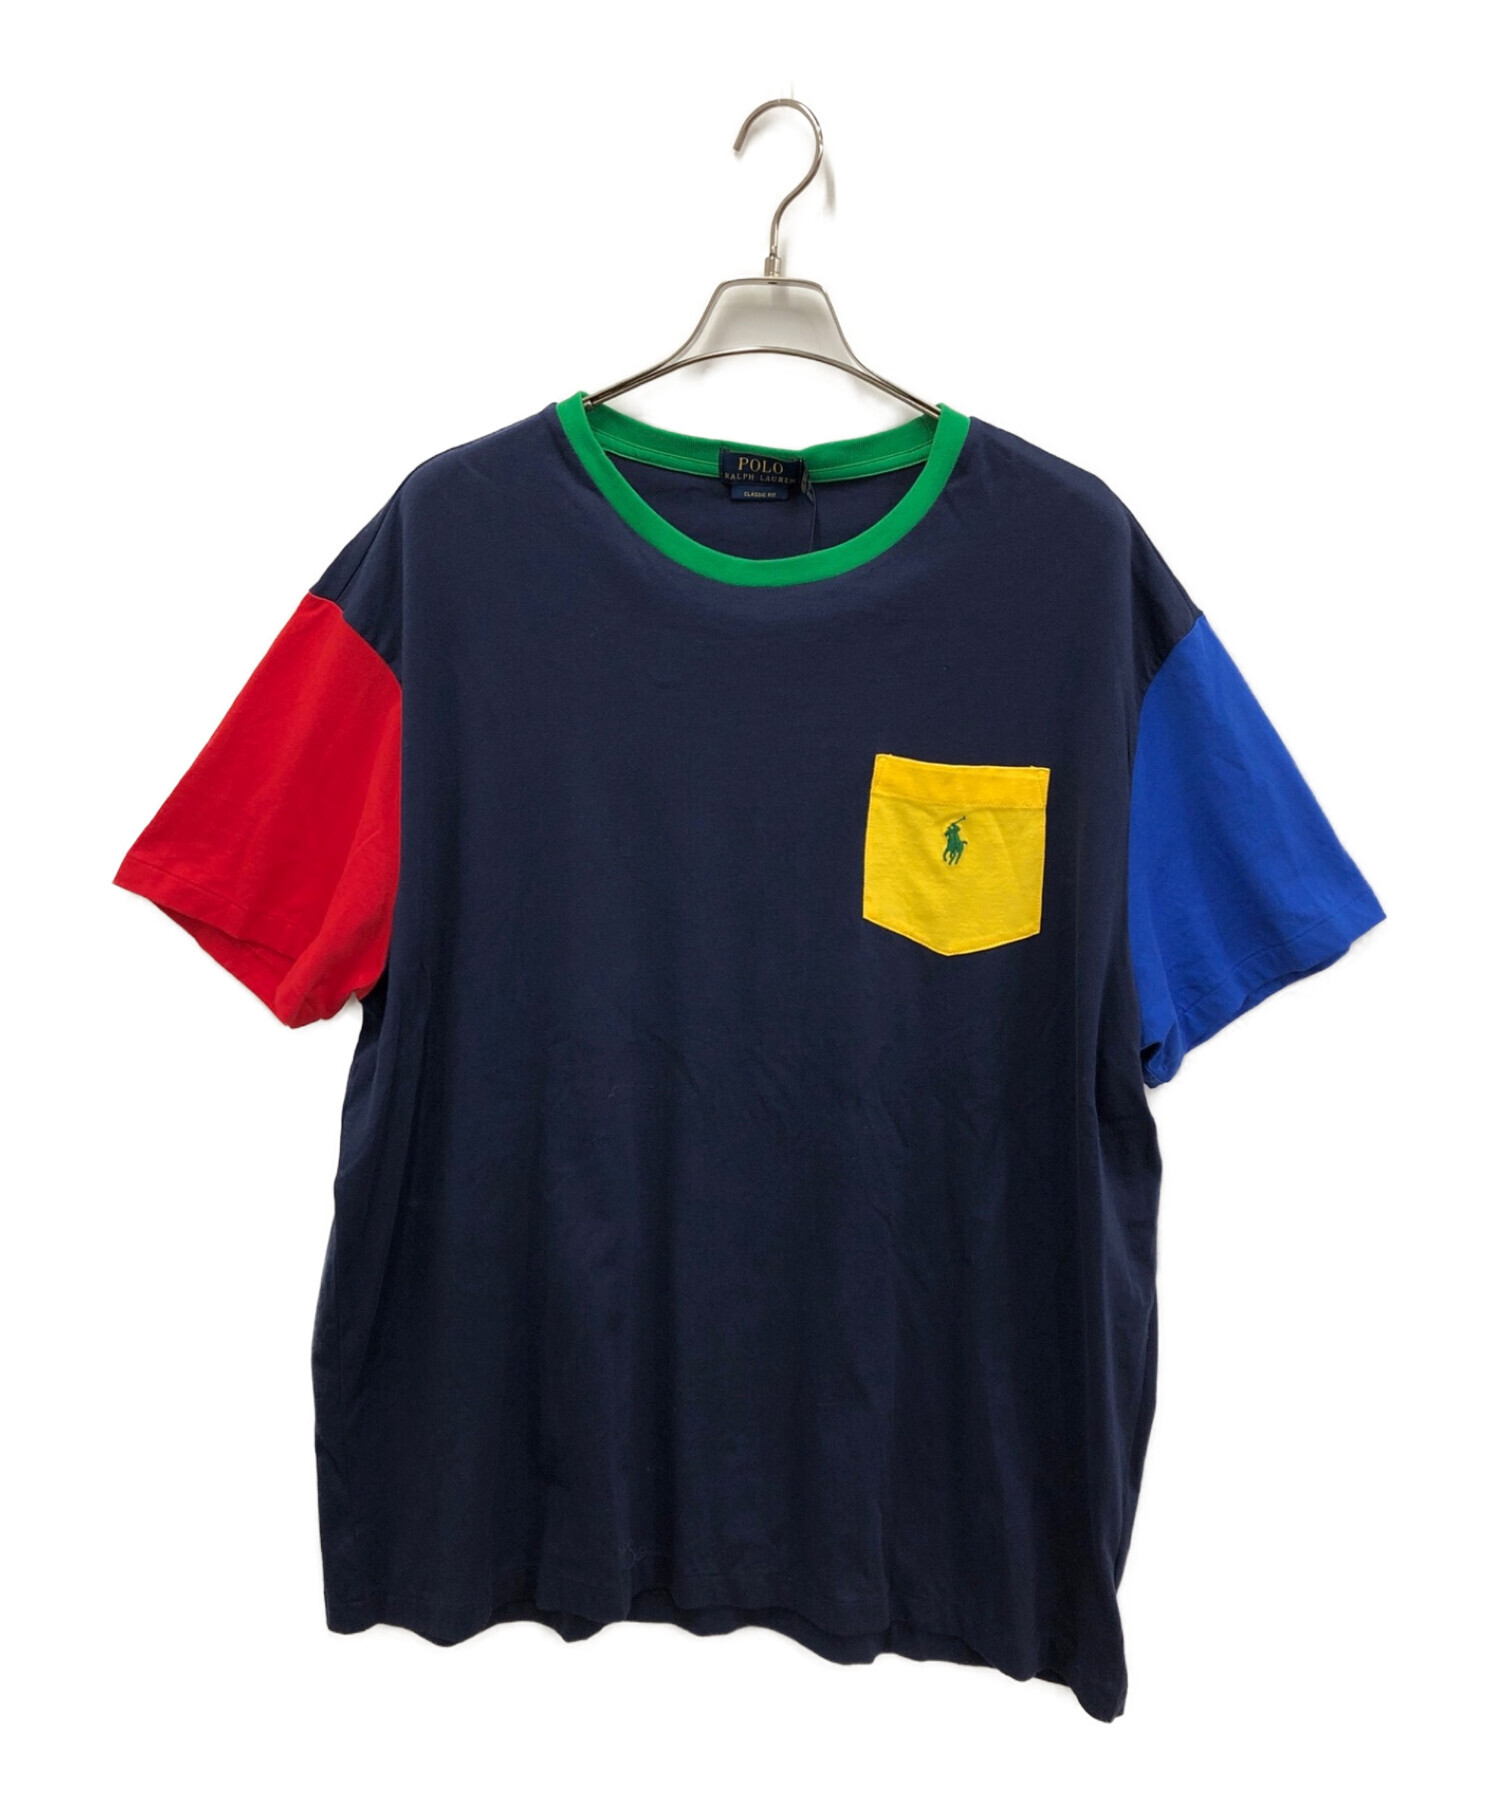 POLO RALPH LAUREN (ポロ・ラルフローレン) Tシャツ ネイビー サイズ:XL 未使用品